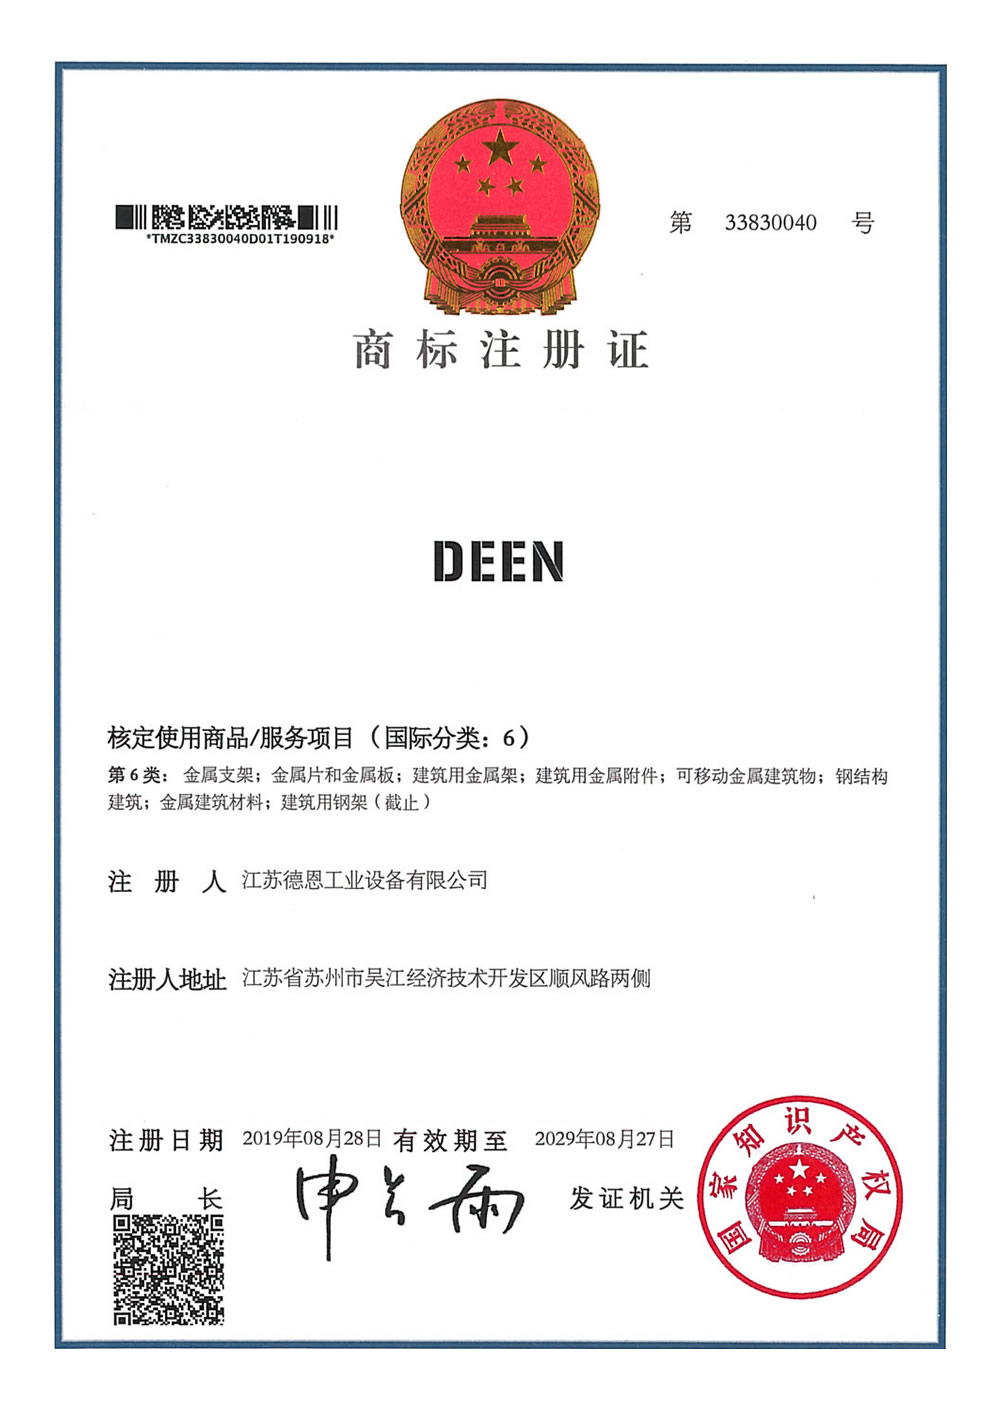 Trademark certificate: Class 6